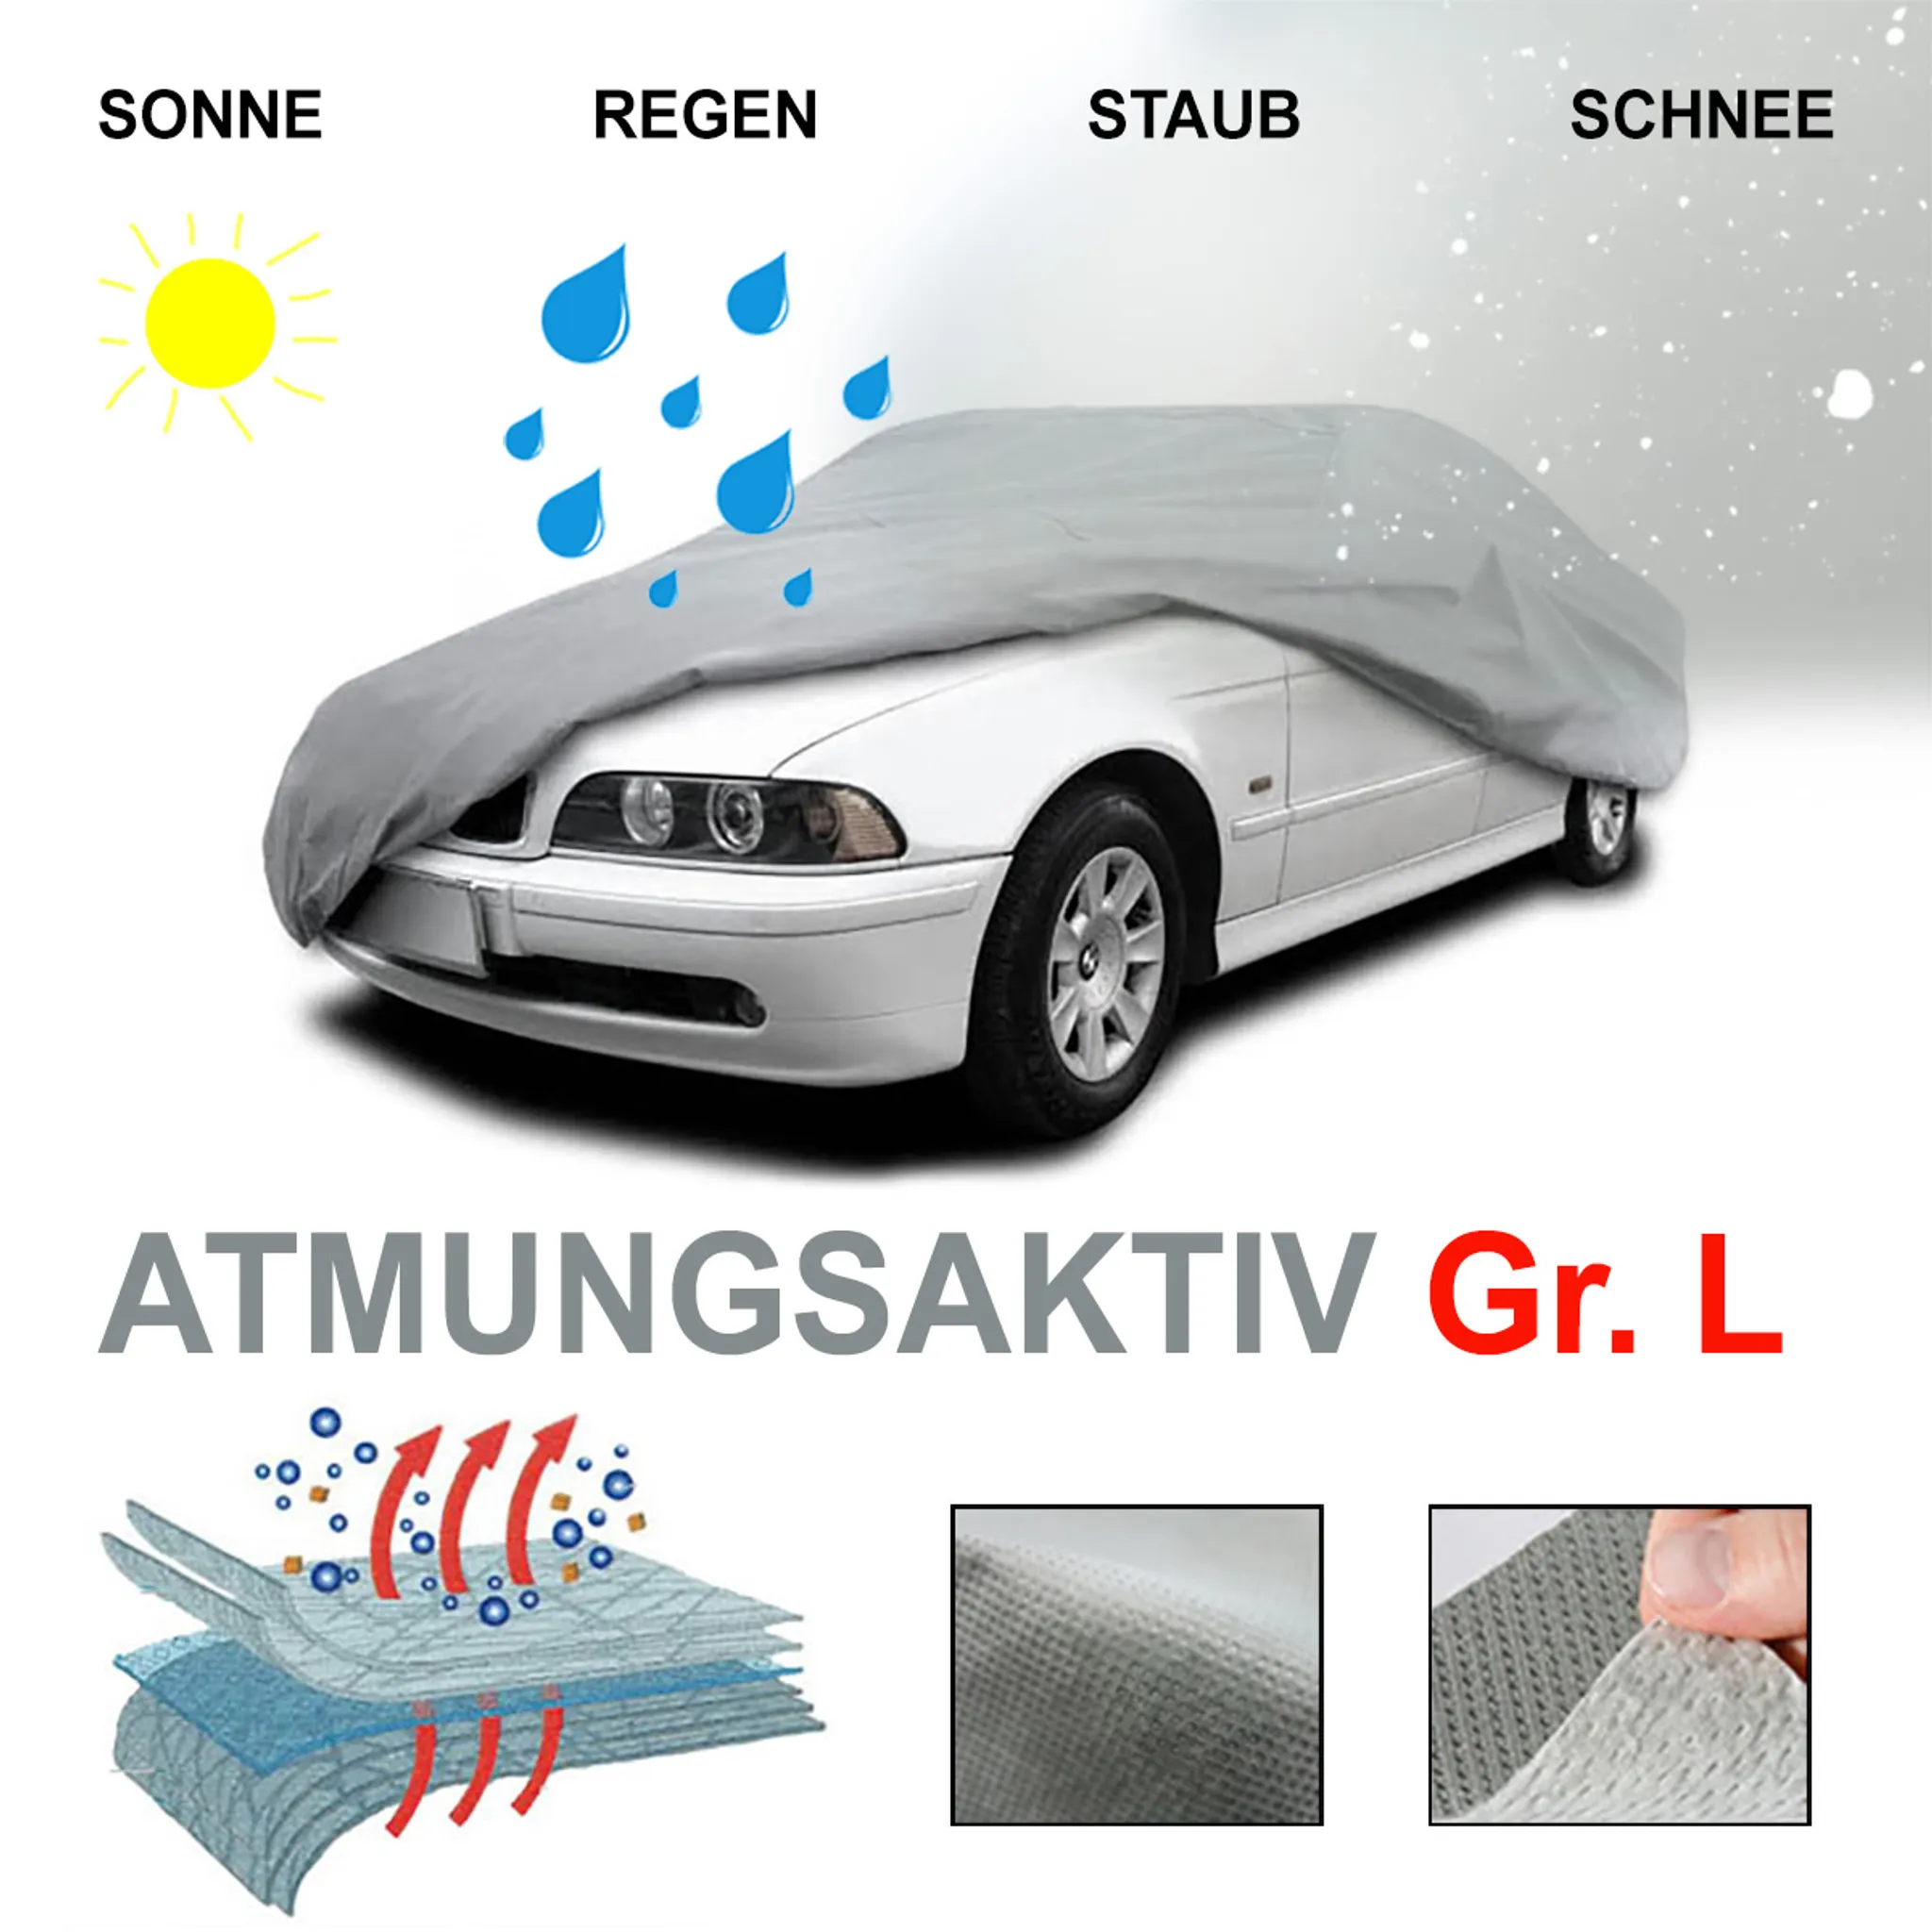 Car Cover Autoabdeckung Ganzgarage für VW Golf 1